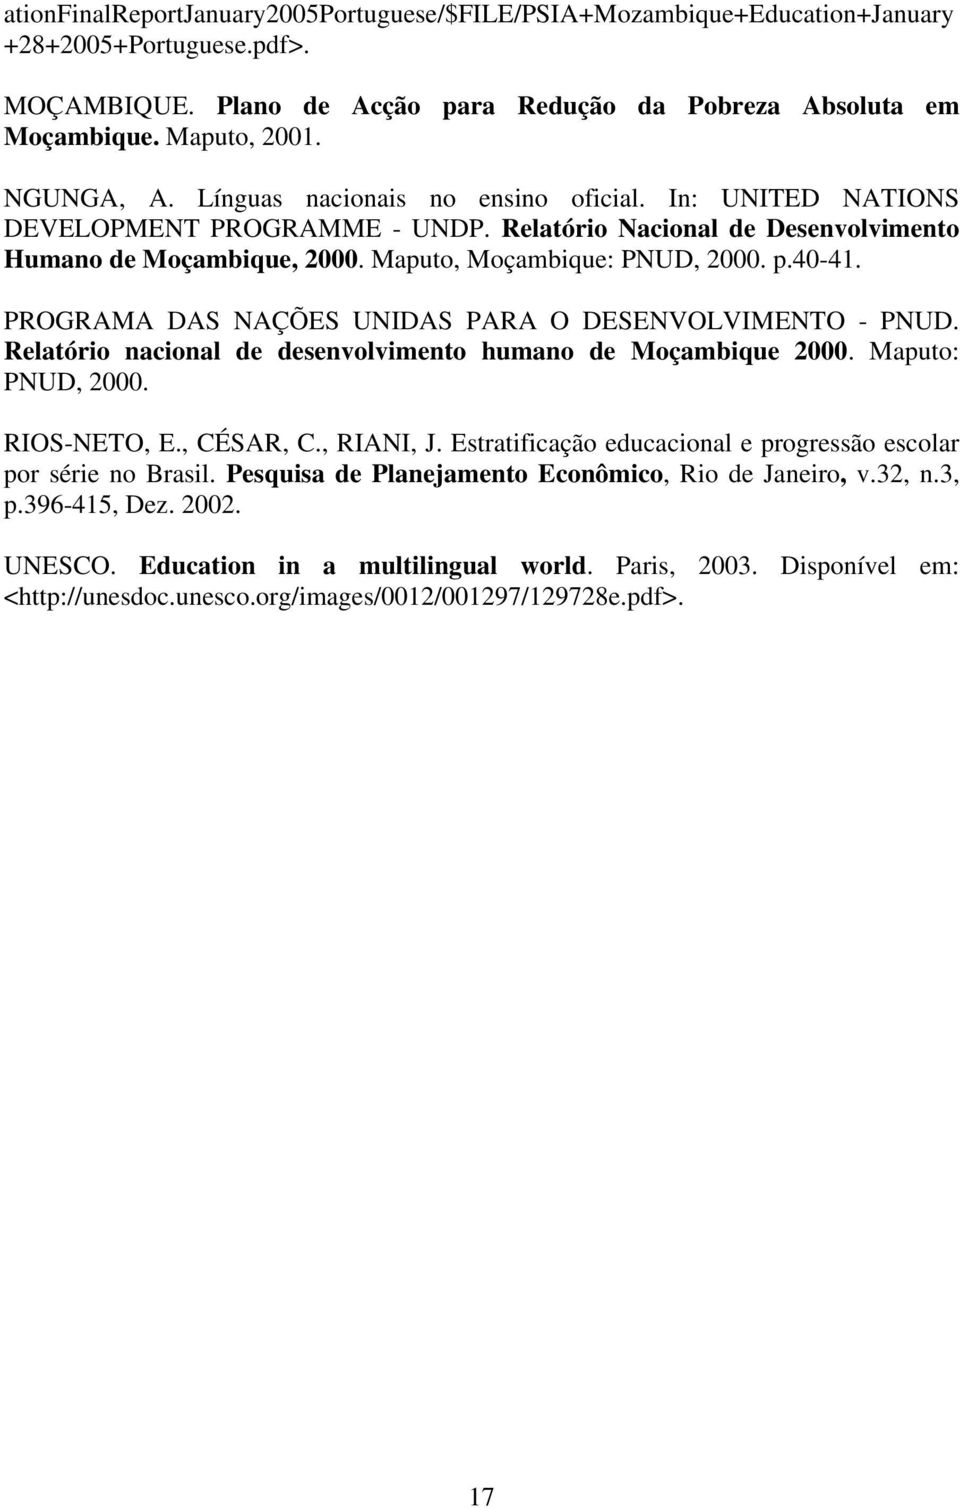 40-41. PROGRAMA DAS NAÇÕES UNIDAS PARA O DESENVOLVIMENTO - PNUD. Relatório nacional de desenvolvimento humano de Moçambique 2000. Maputo: PNUD, 2000. RIOS-NETO, E., CÉSAR, C., RIANI, J.